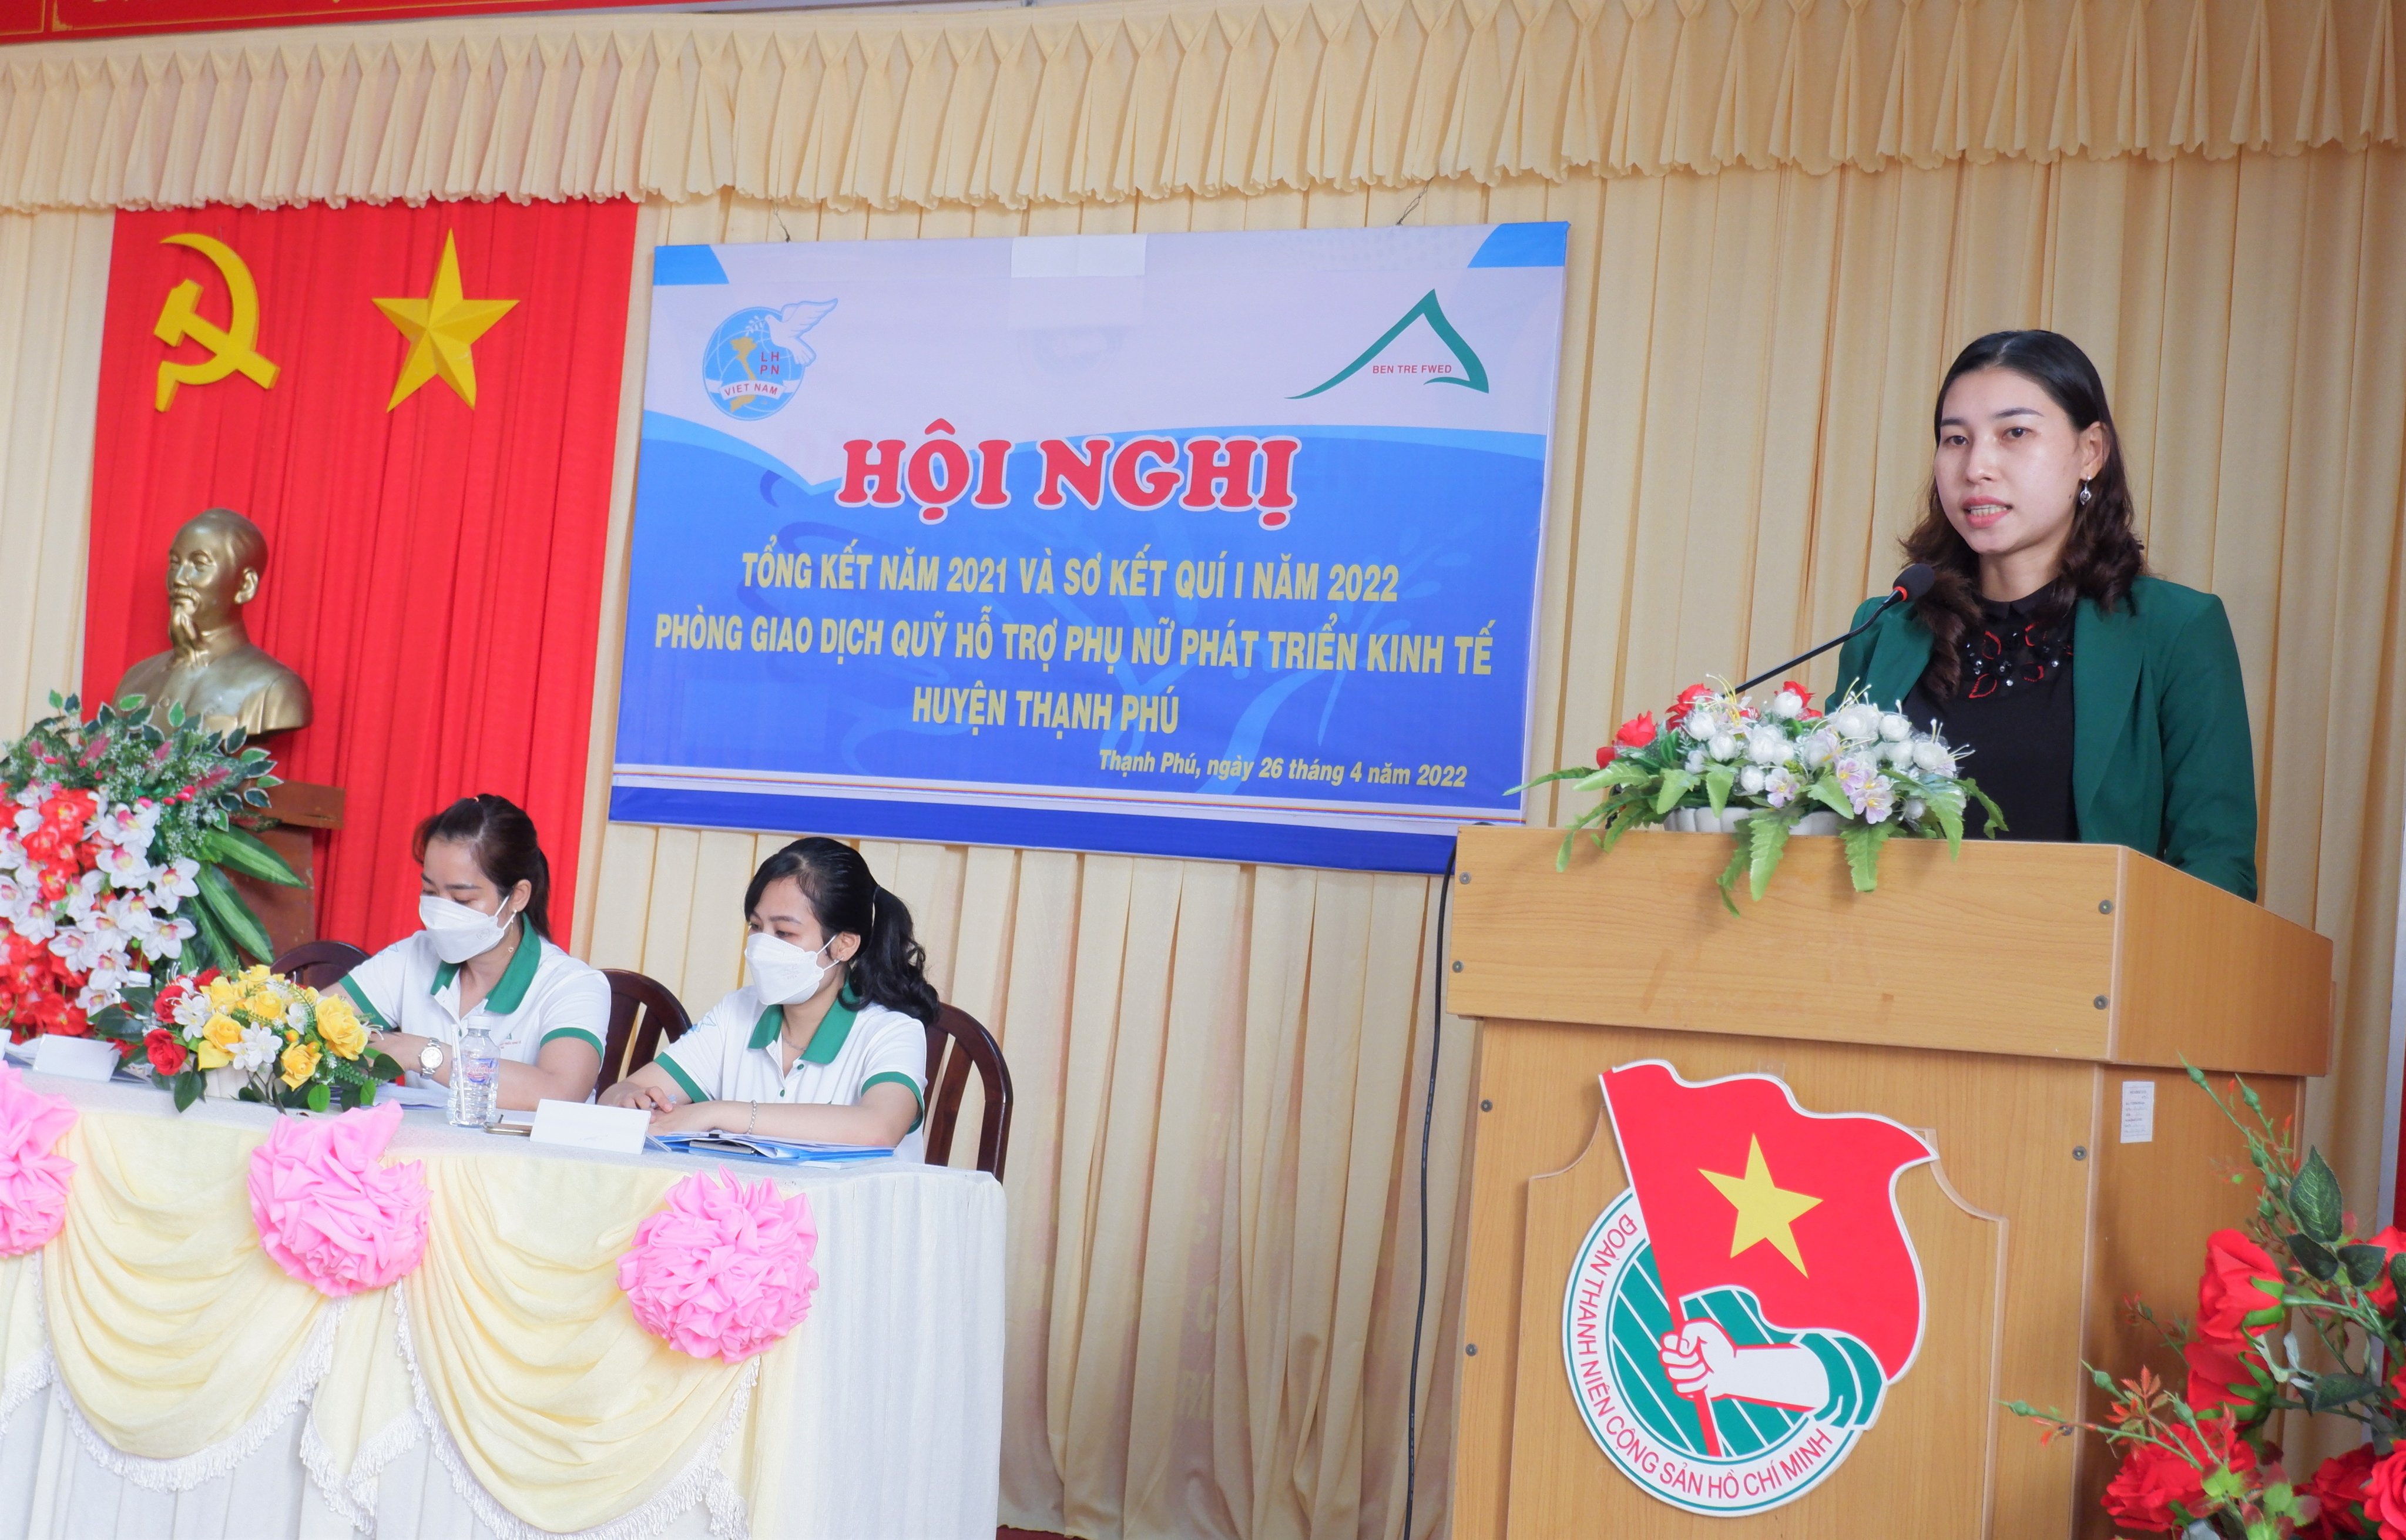 Quỹ hỗ trợ Phụ nữ phát triển kinh tế huyện Thạnh Phú tổng kết hoạt động năm 2021 và sơ kết quí I năm 2022